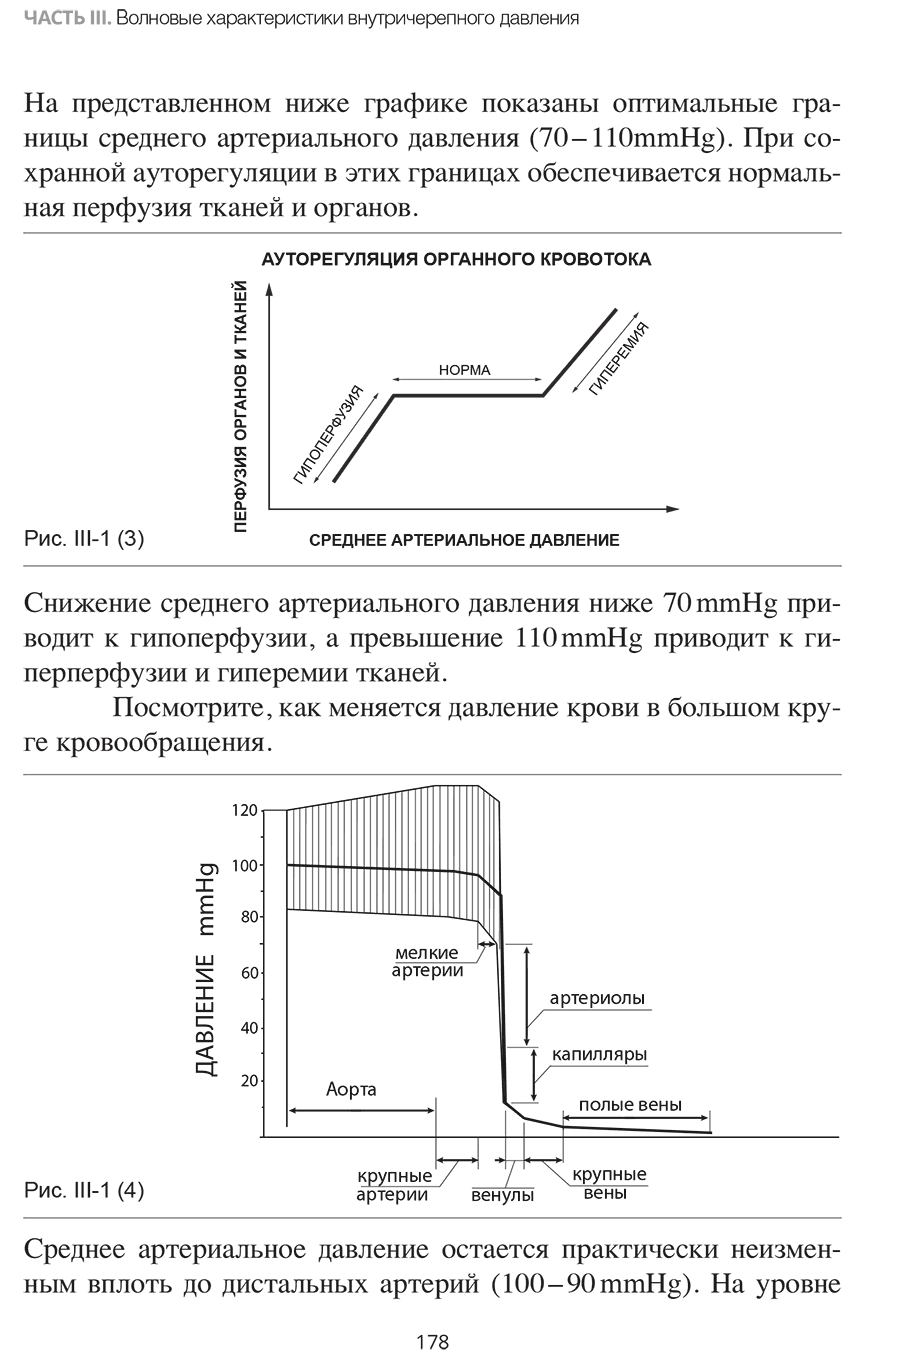 Примеры страниц из книги "Внутричерепная гипертензия. Патофизиология. Мониторинг. Лечение"